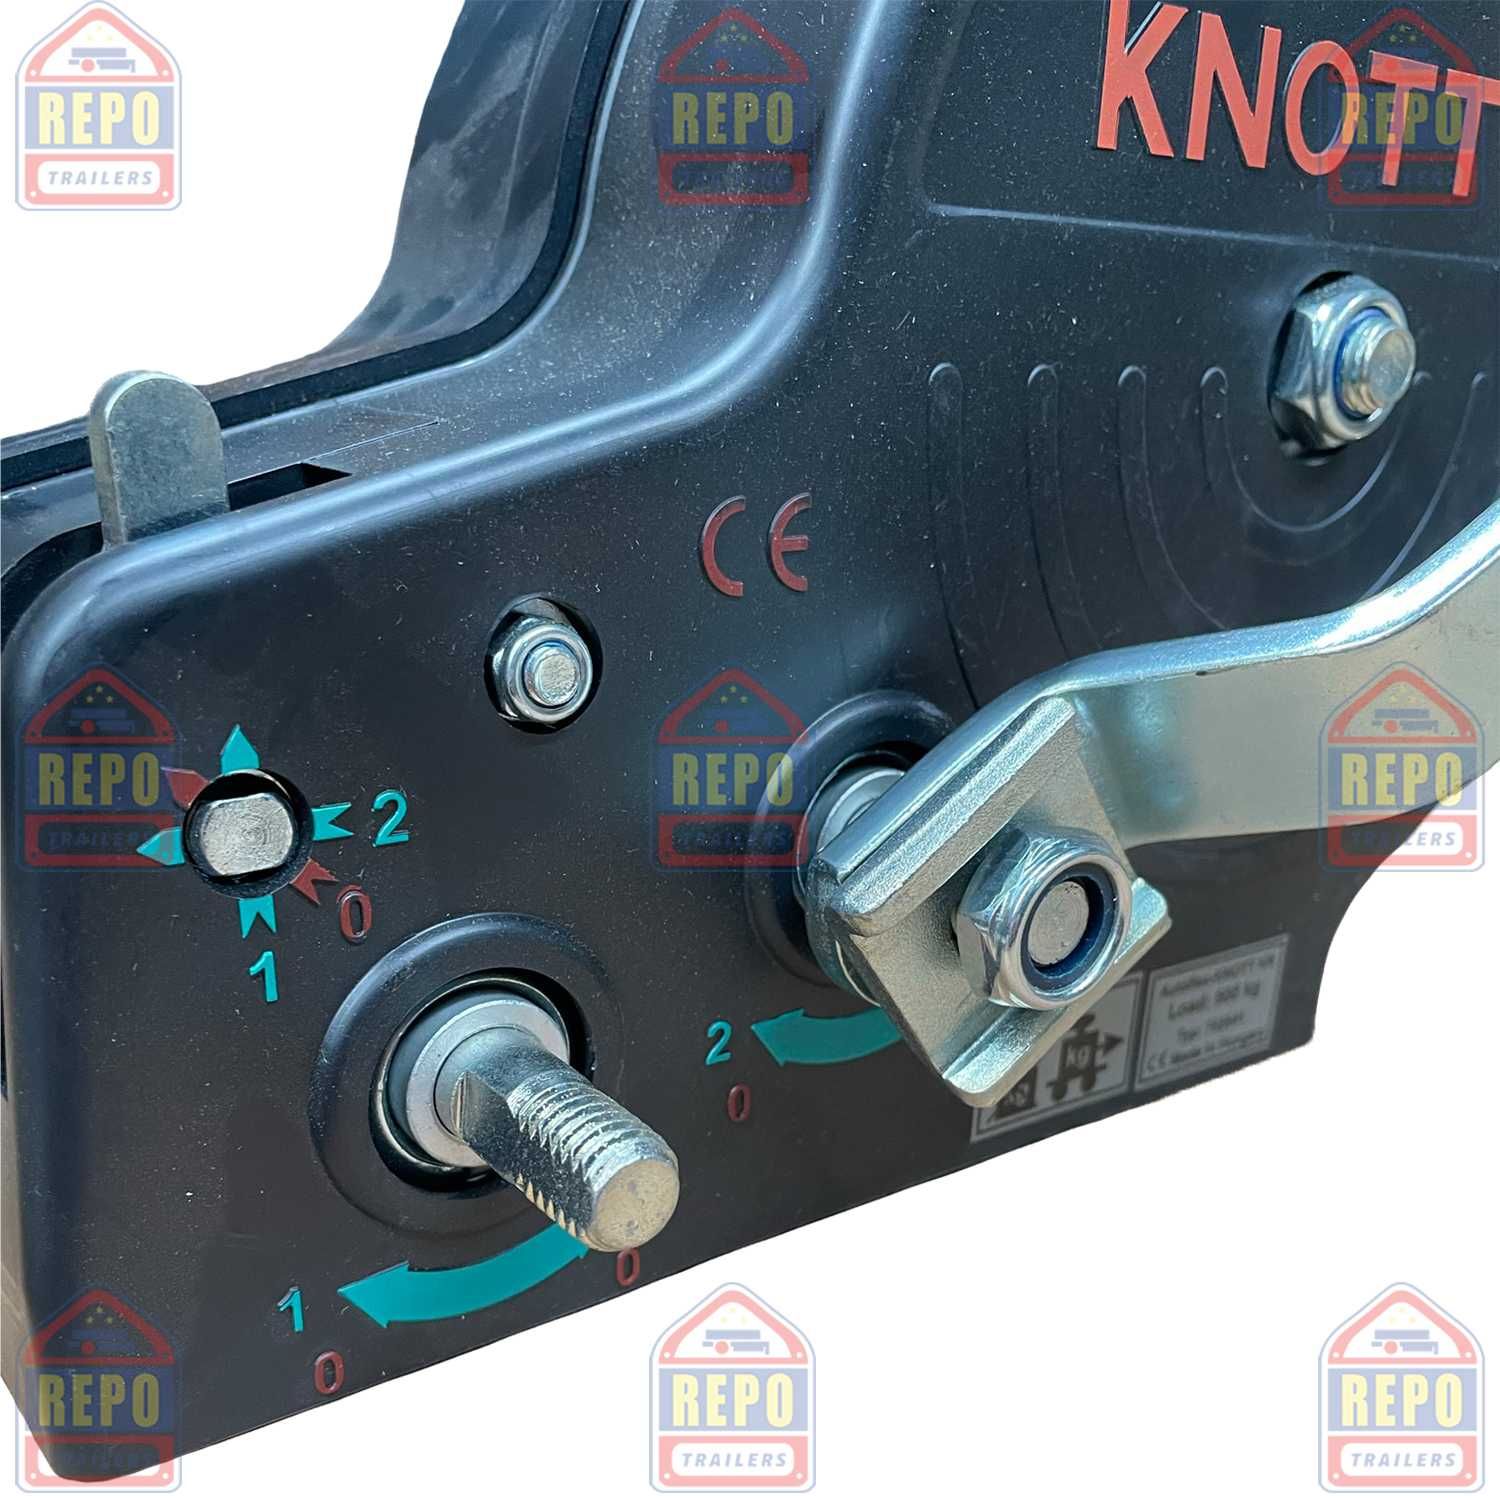 Troliu manual Knott 900 Kg remorca cablu carcasa